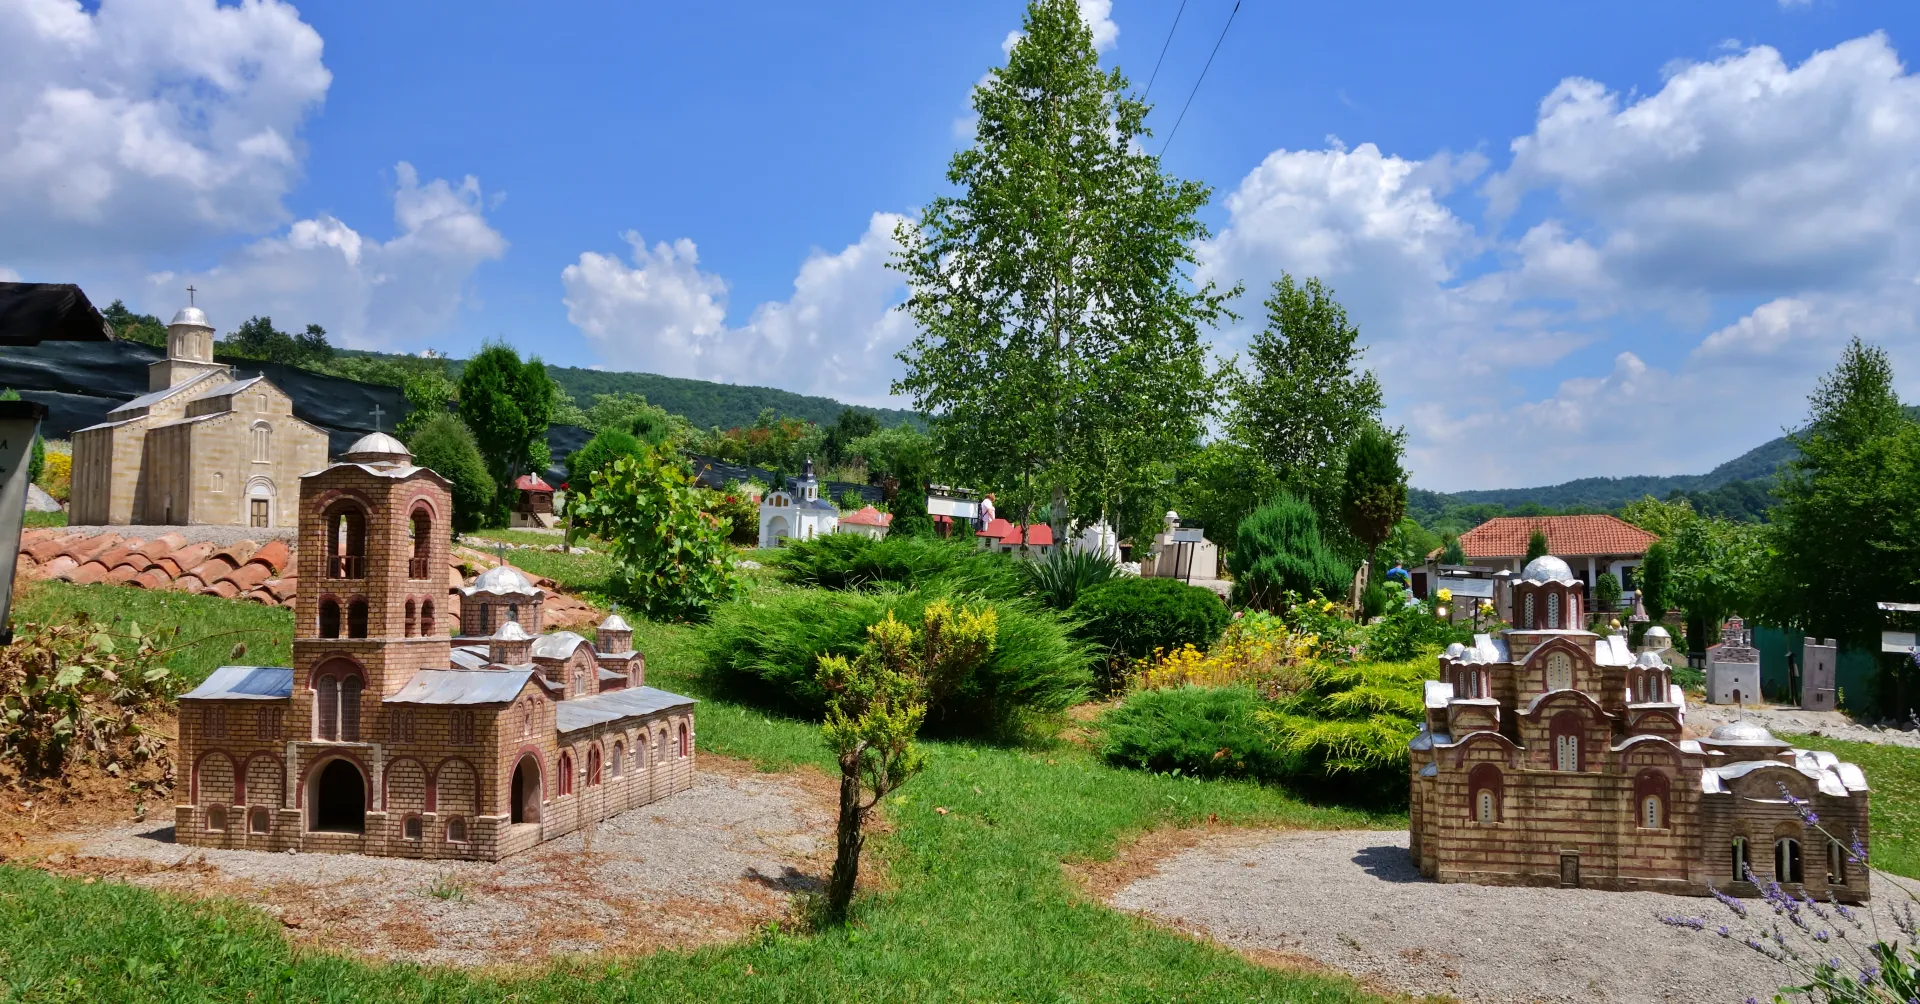 Park miniatur Despotovac